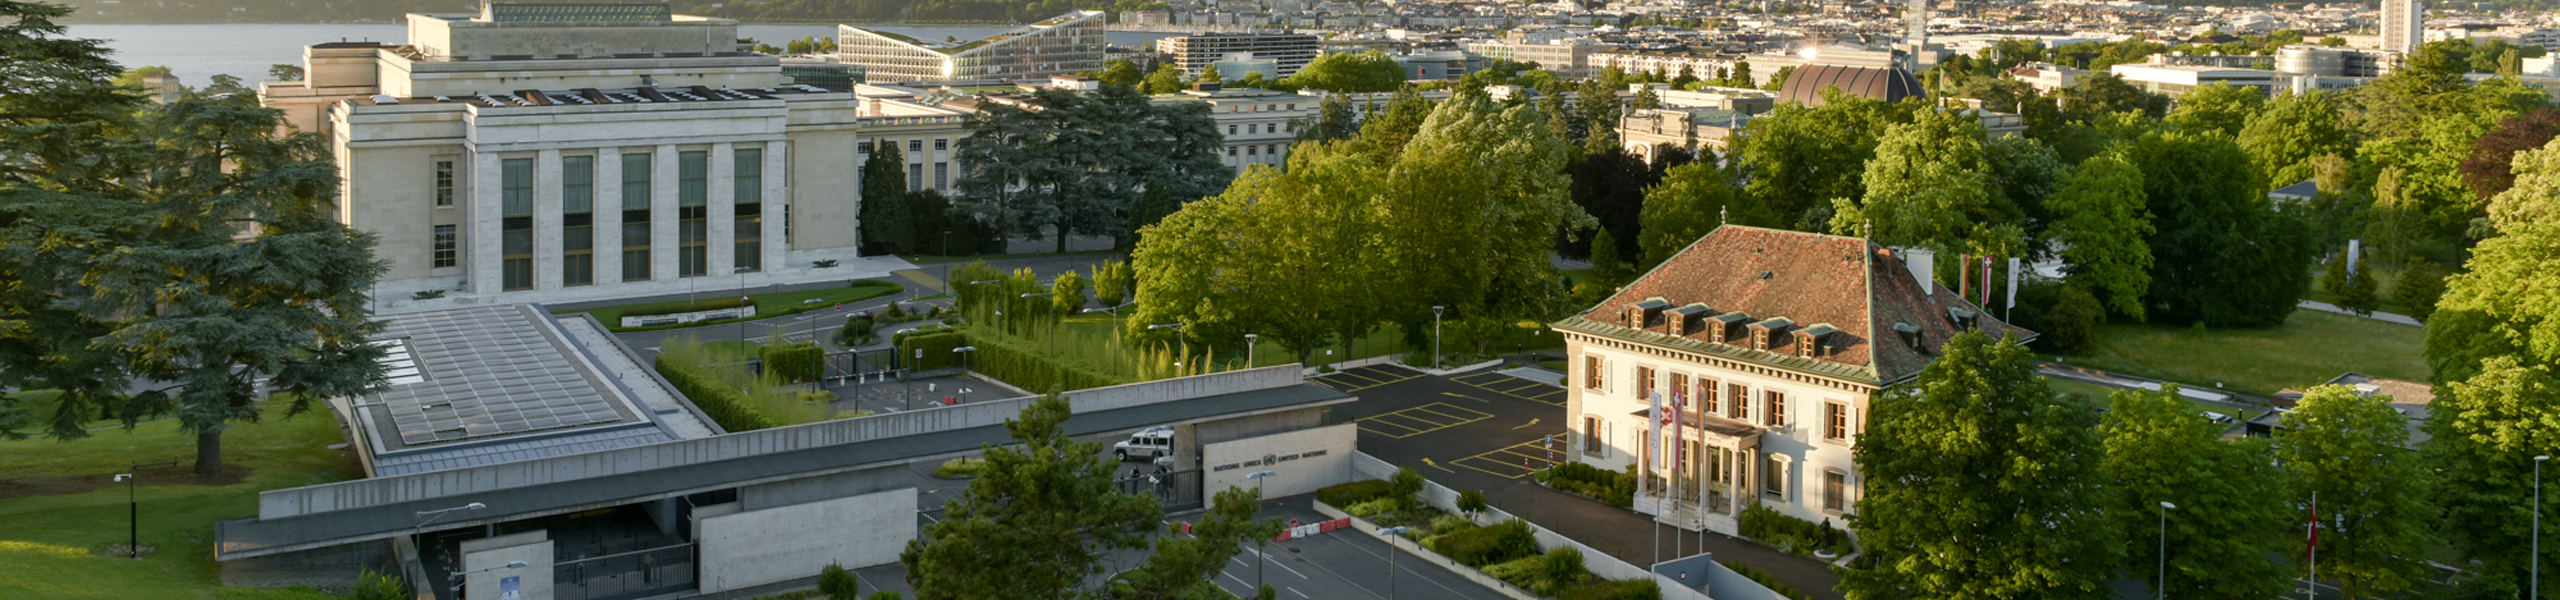 EHG Hotelfachschule Genf Panoramabild